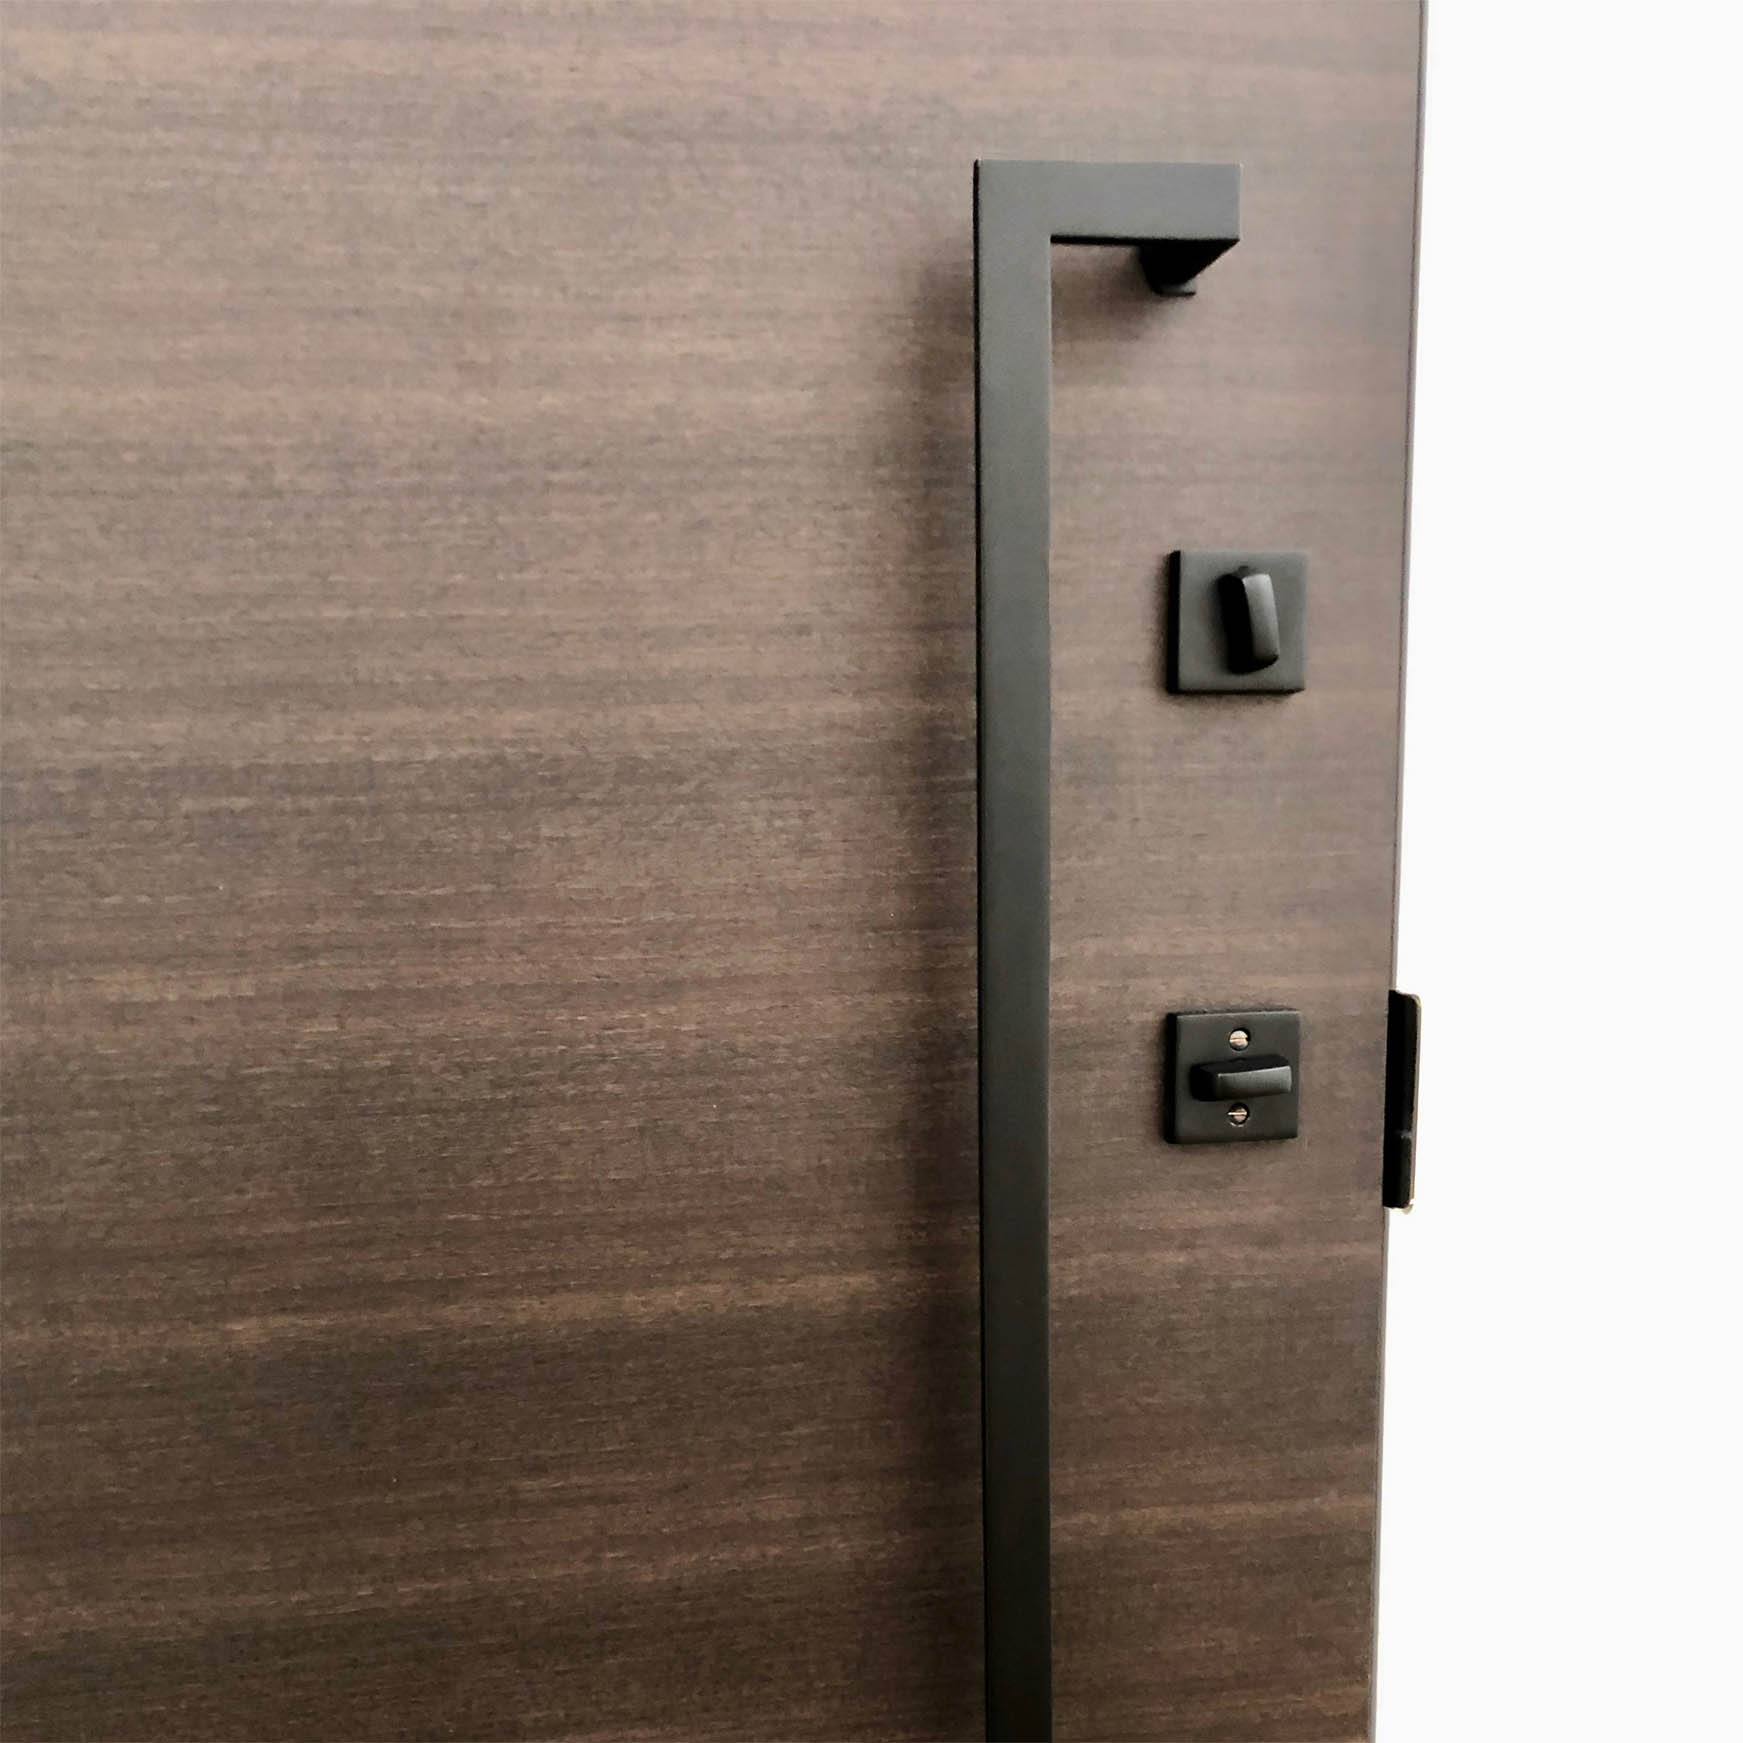 Door Handles: Back to Back - Type 3.1 - JWL Home